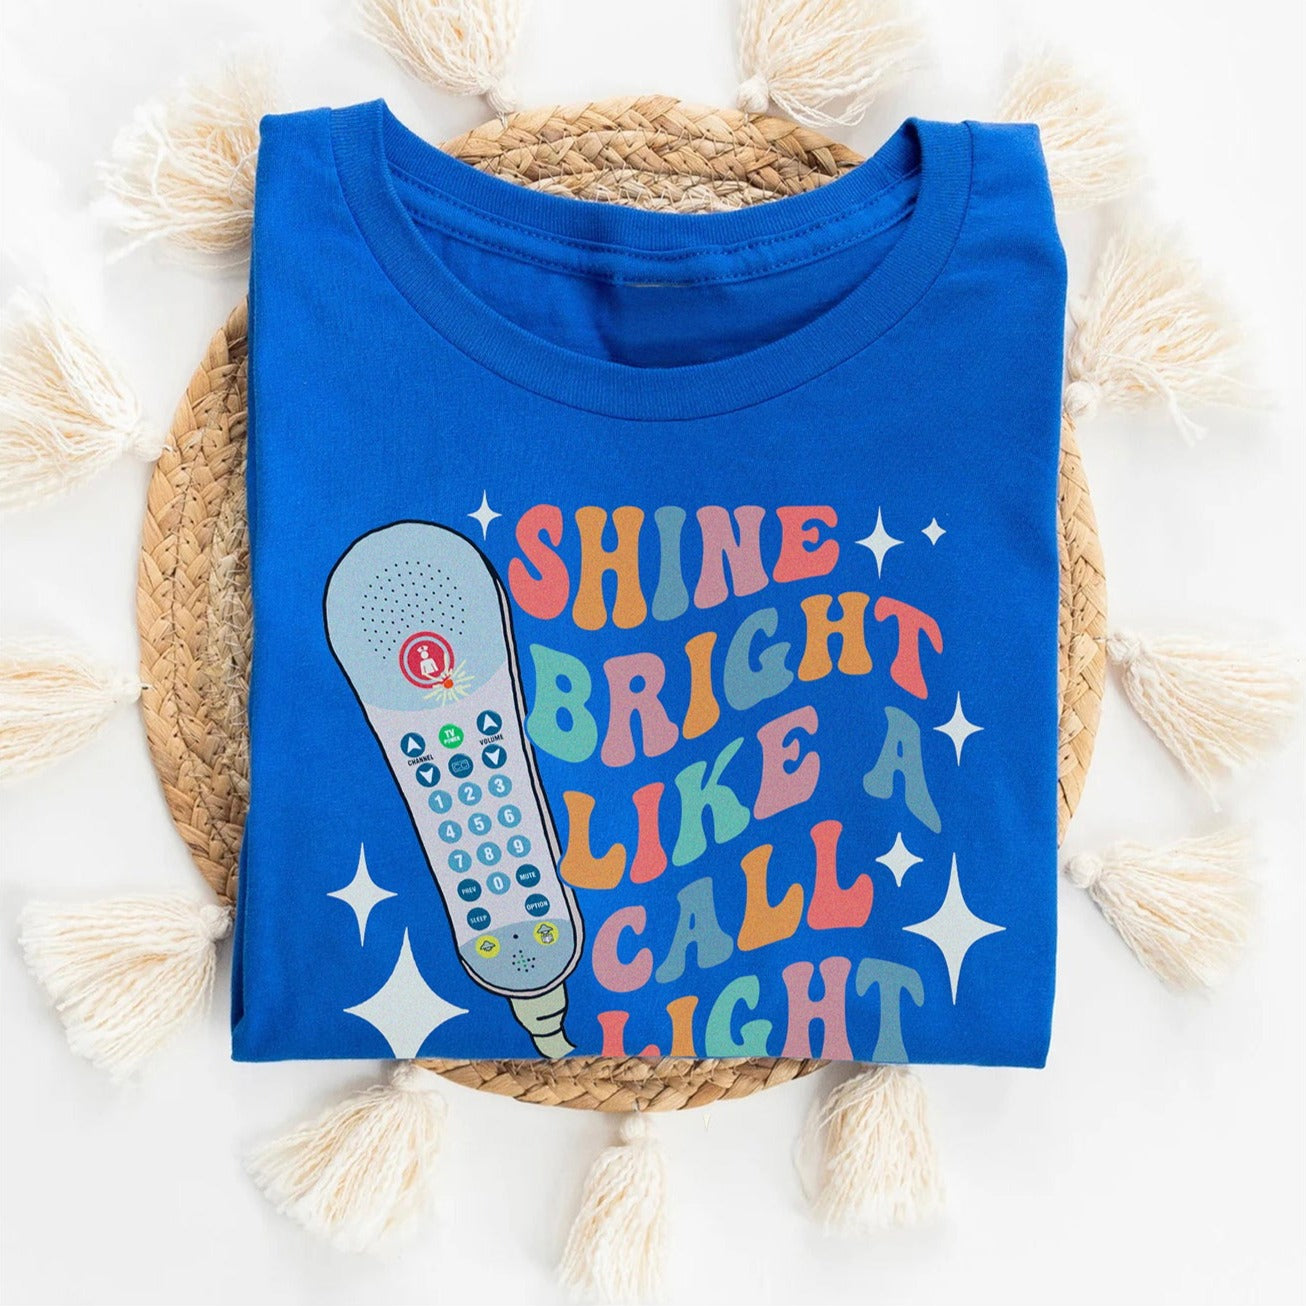 Retro Shine Bright Like a Call Light T-Shirt